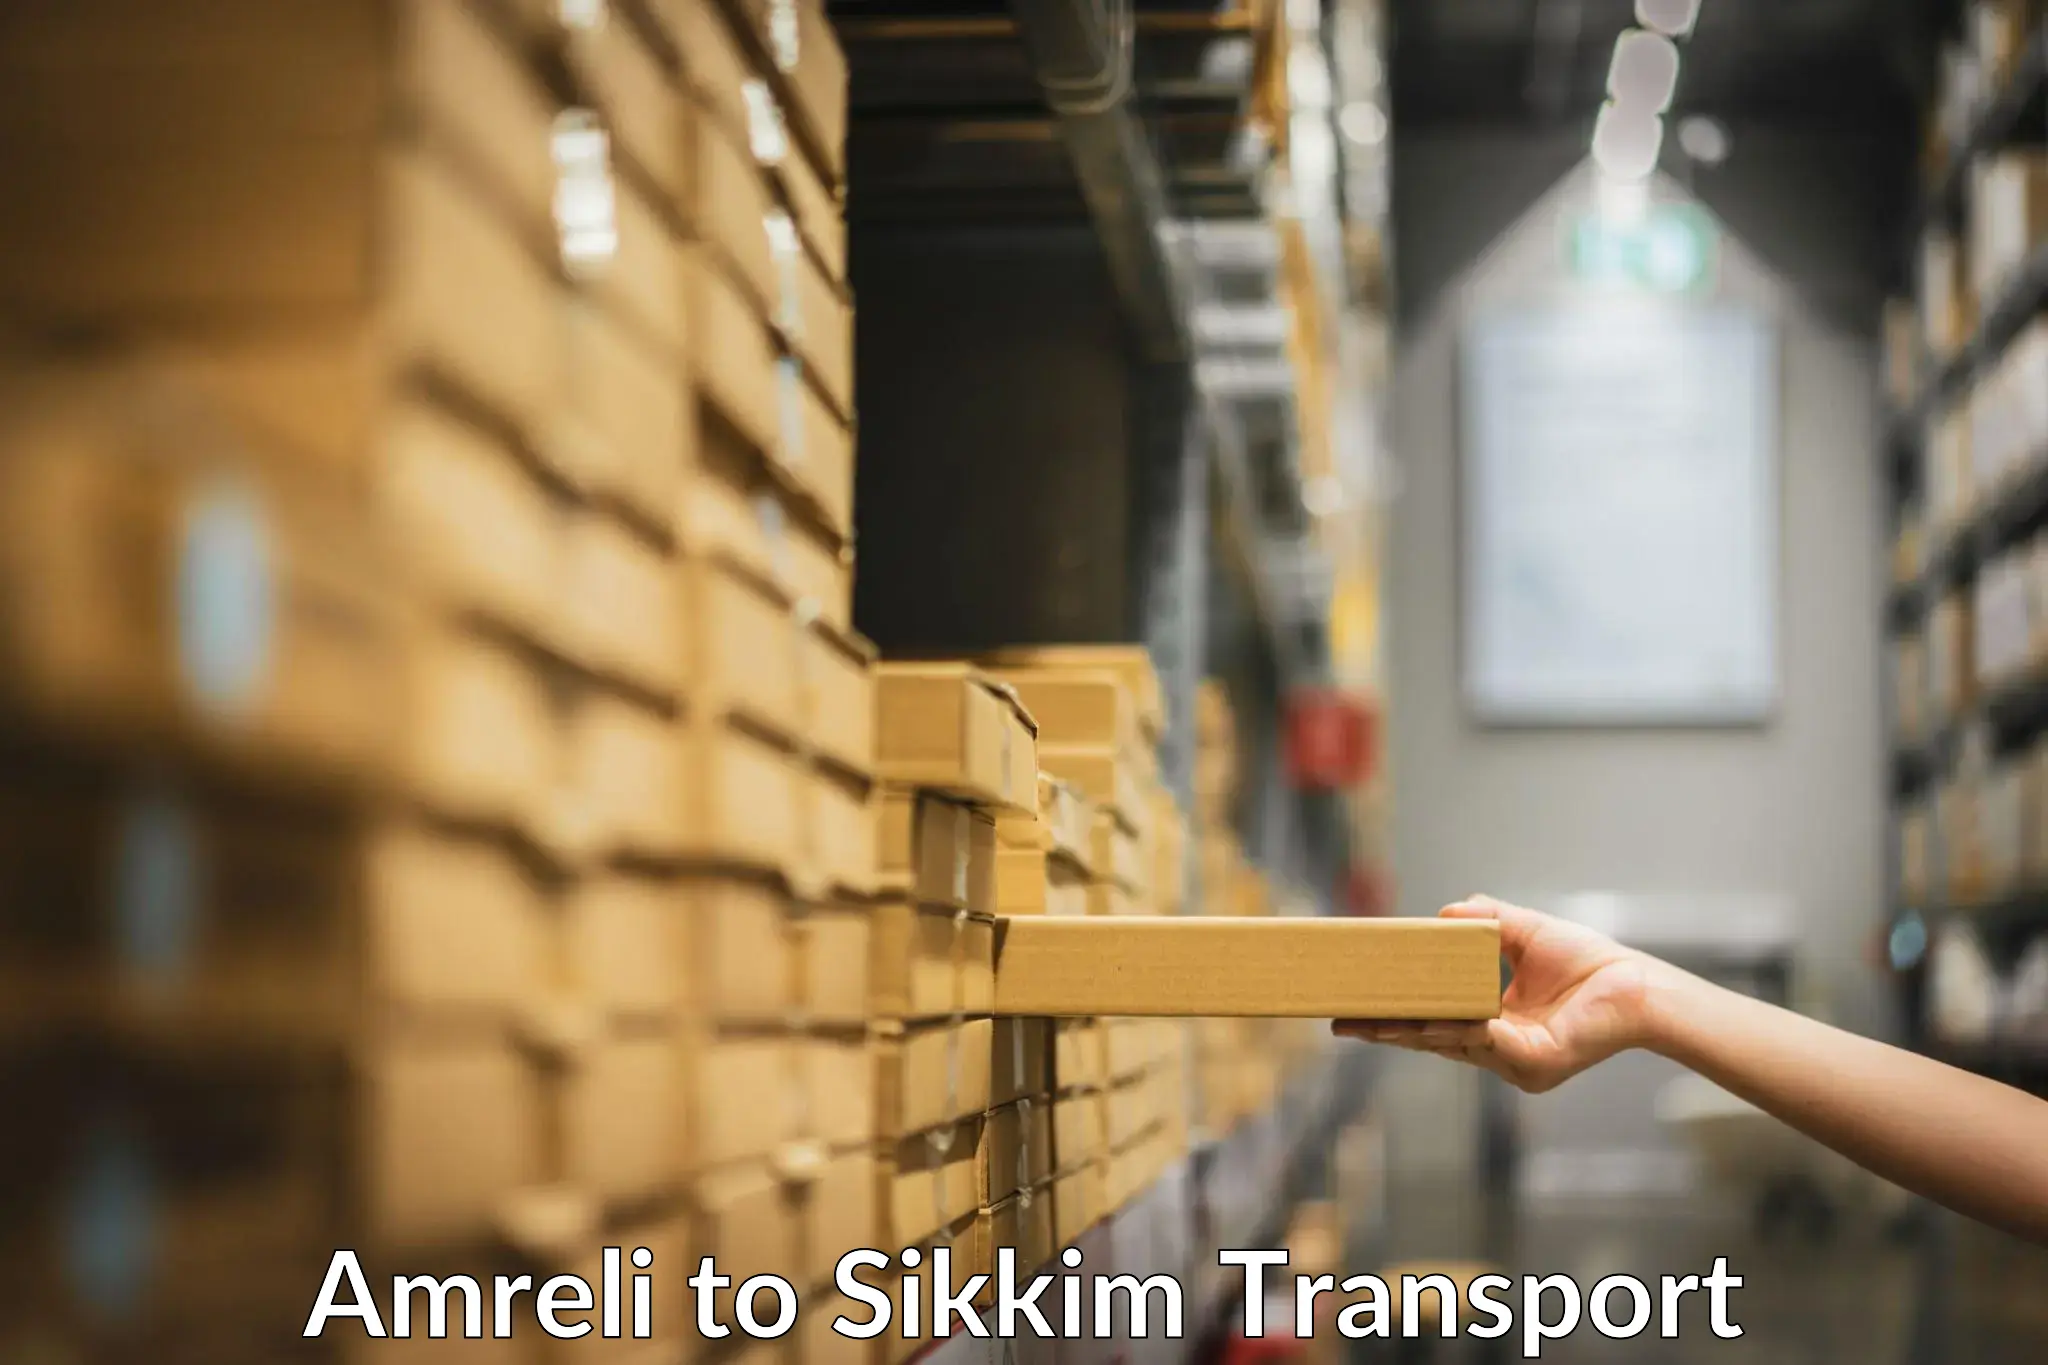 Nearest transport service Amreli to North Sikkim